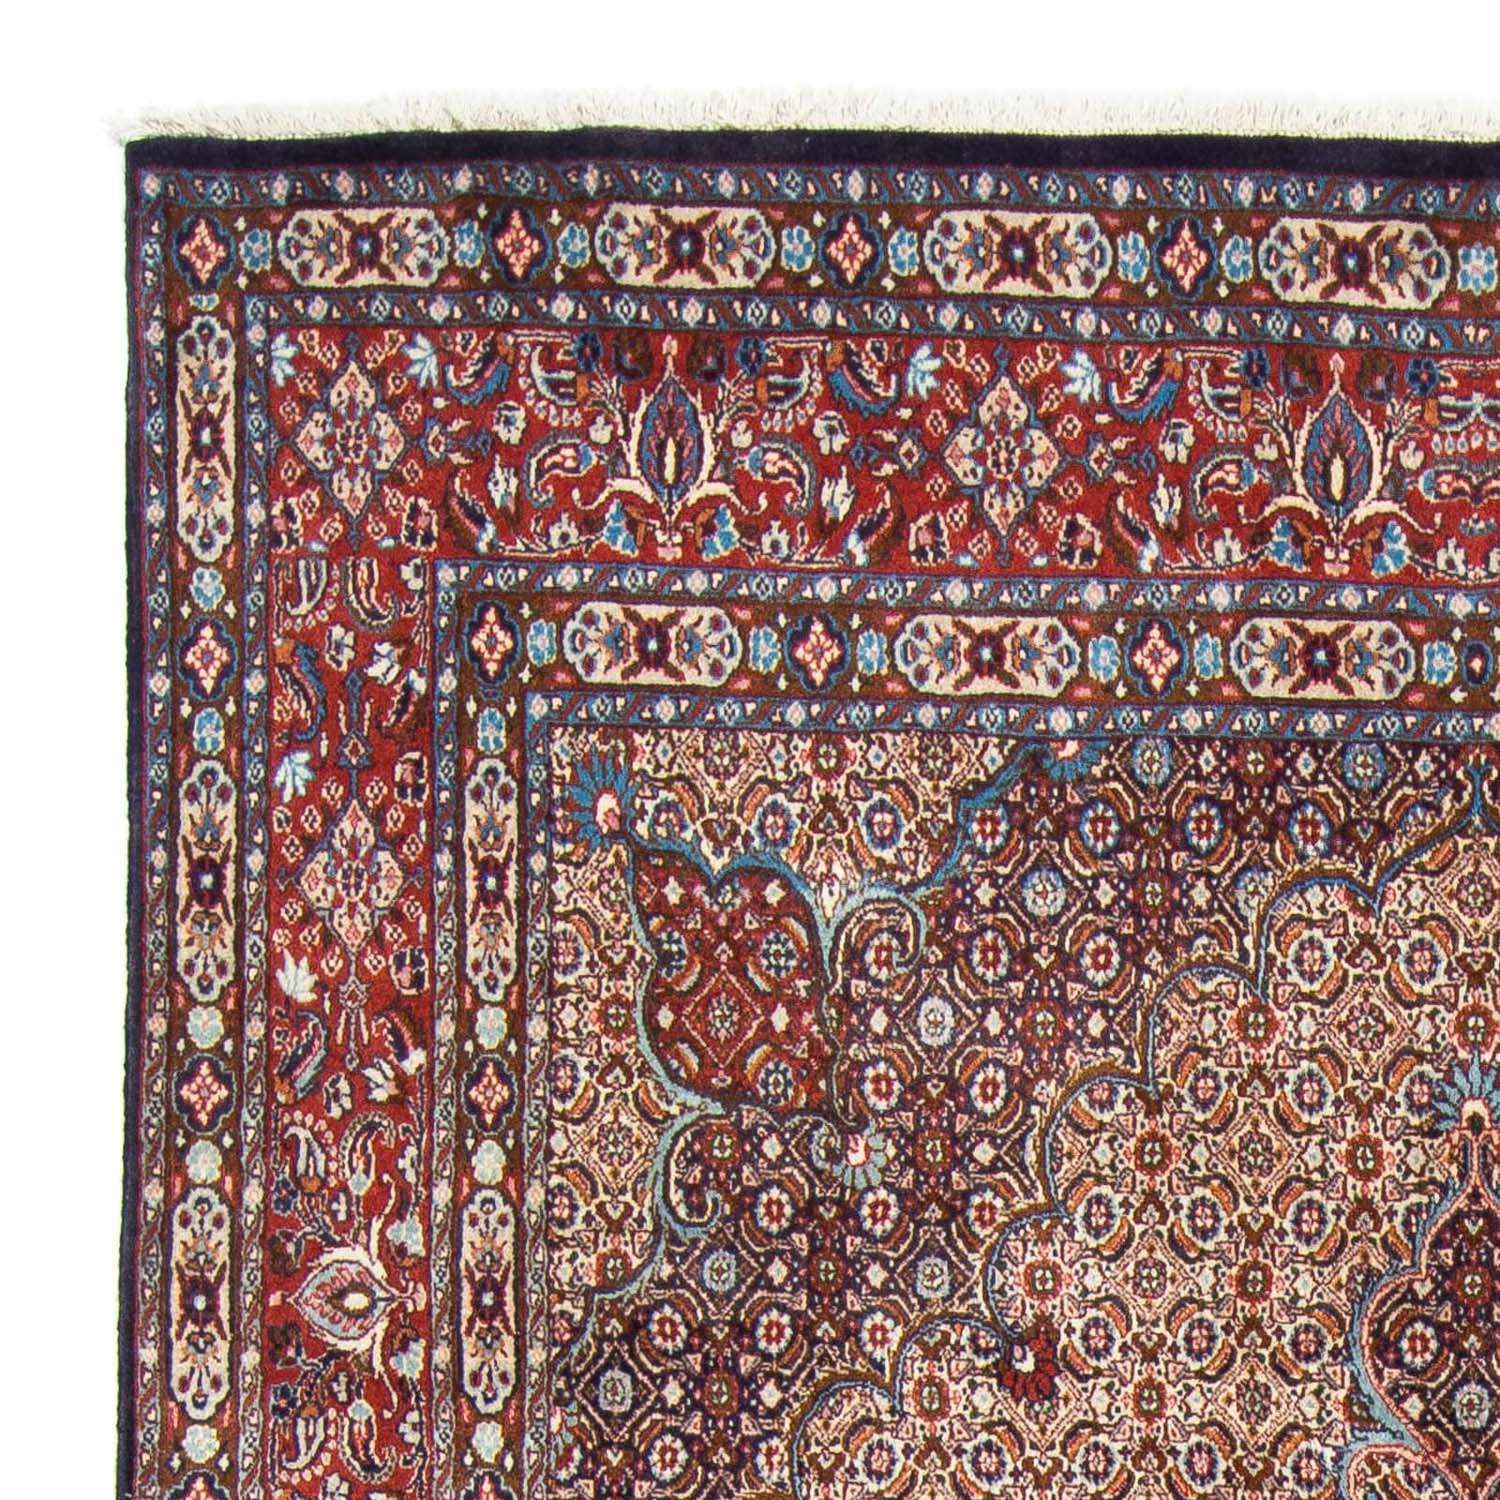 Tapete Persa - Clássico - 300 x 199 cm - vermelho claro